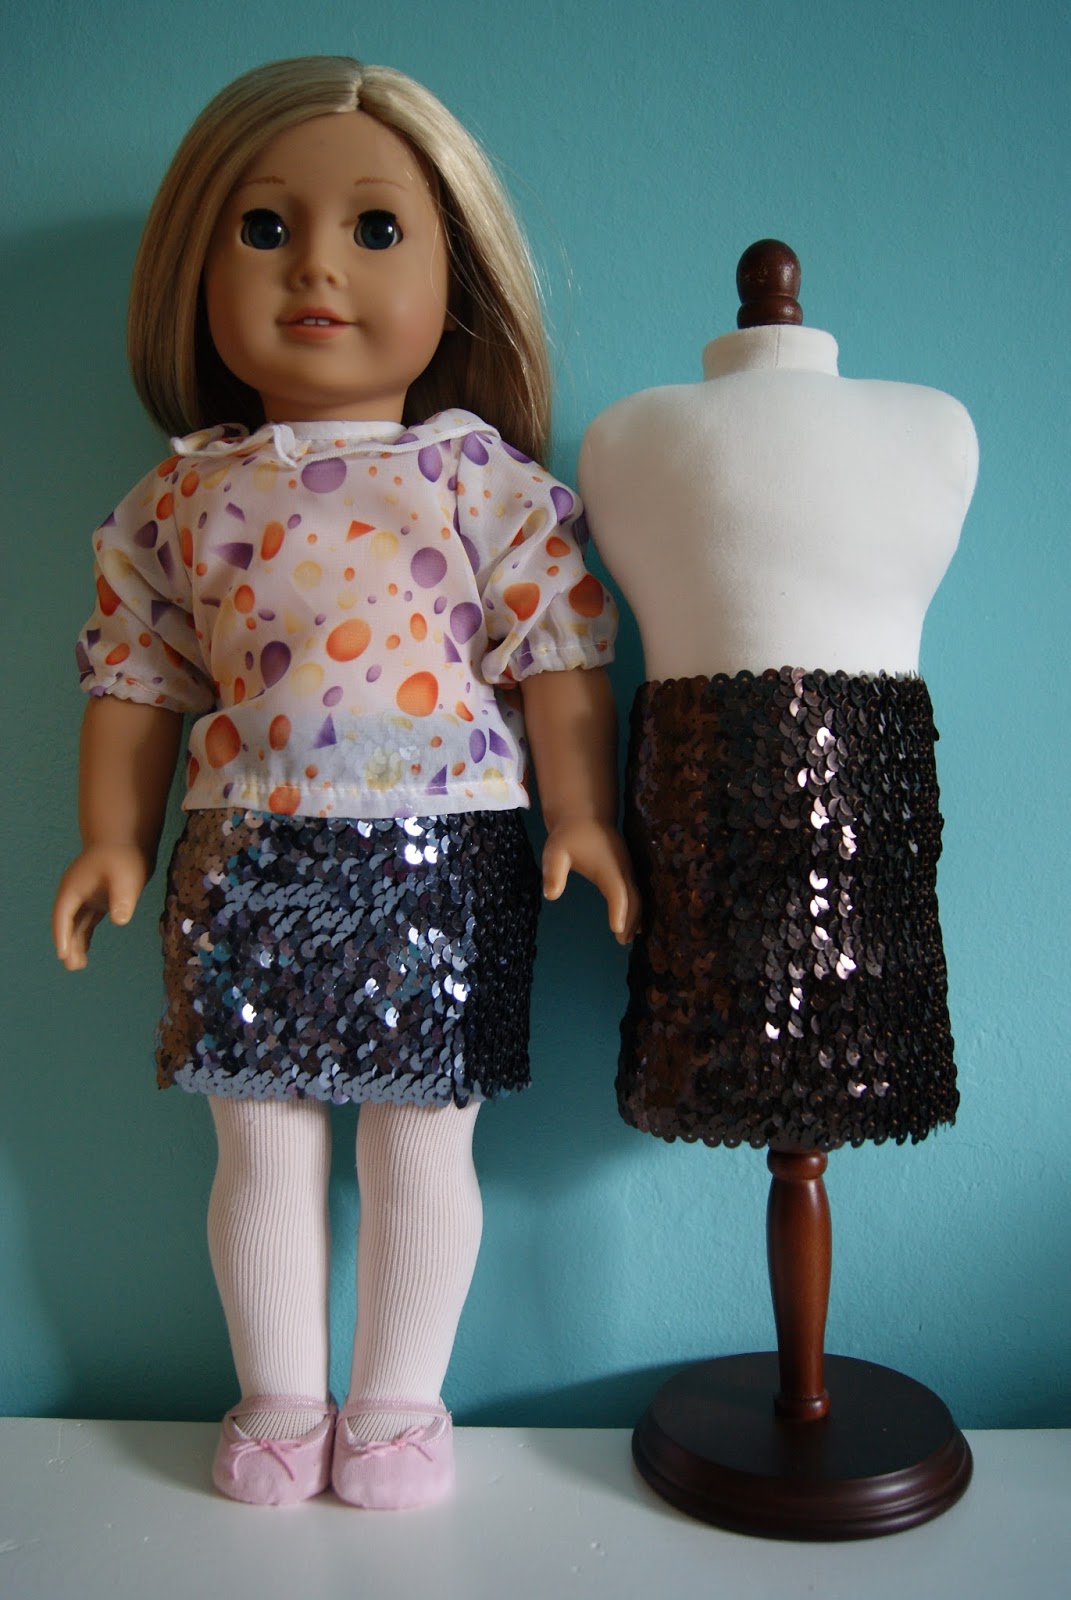 Sequin skirt for 18-inch doll by nest full of eggs